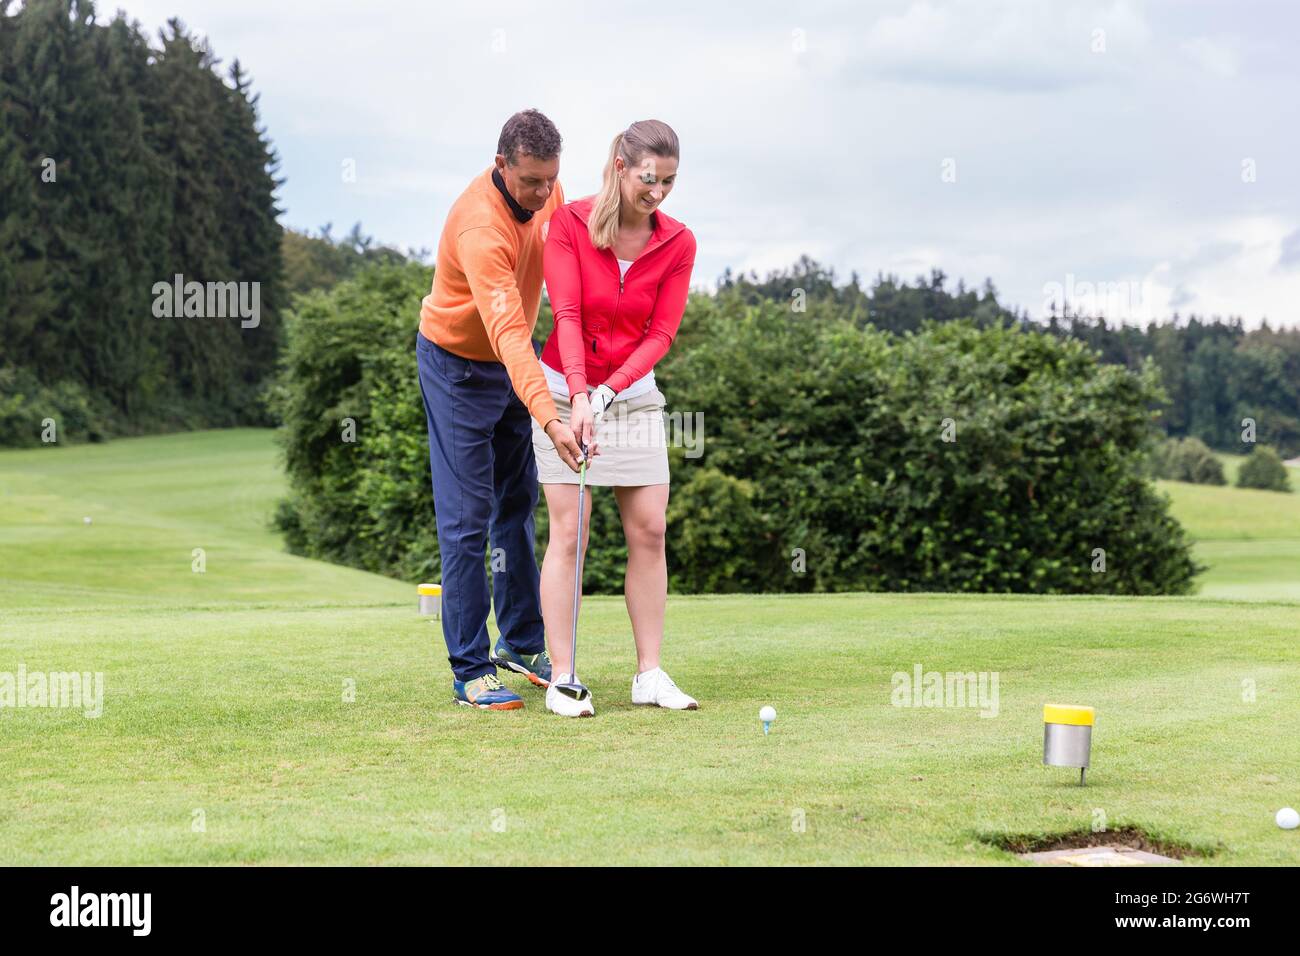 Homme enseignant à la femme de jouer au golf en se tenant sur le terrain Banque D'Images